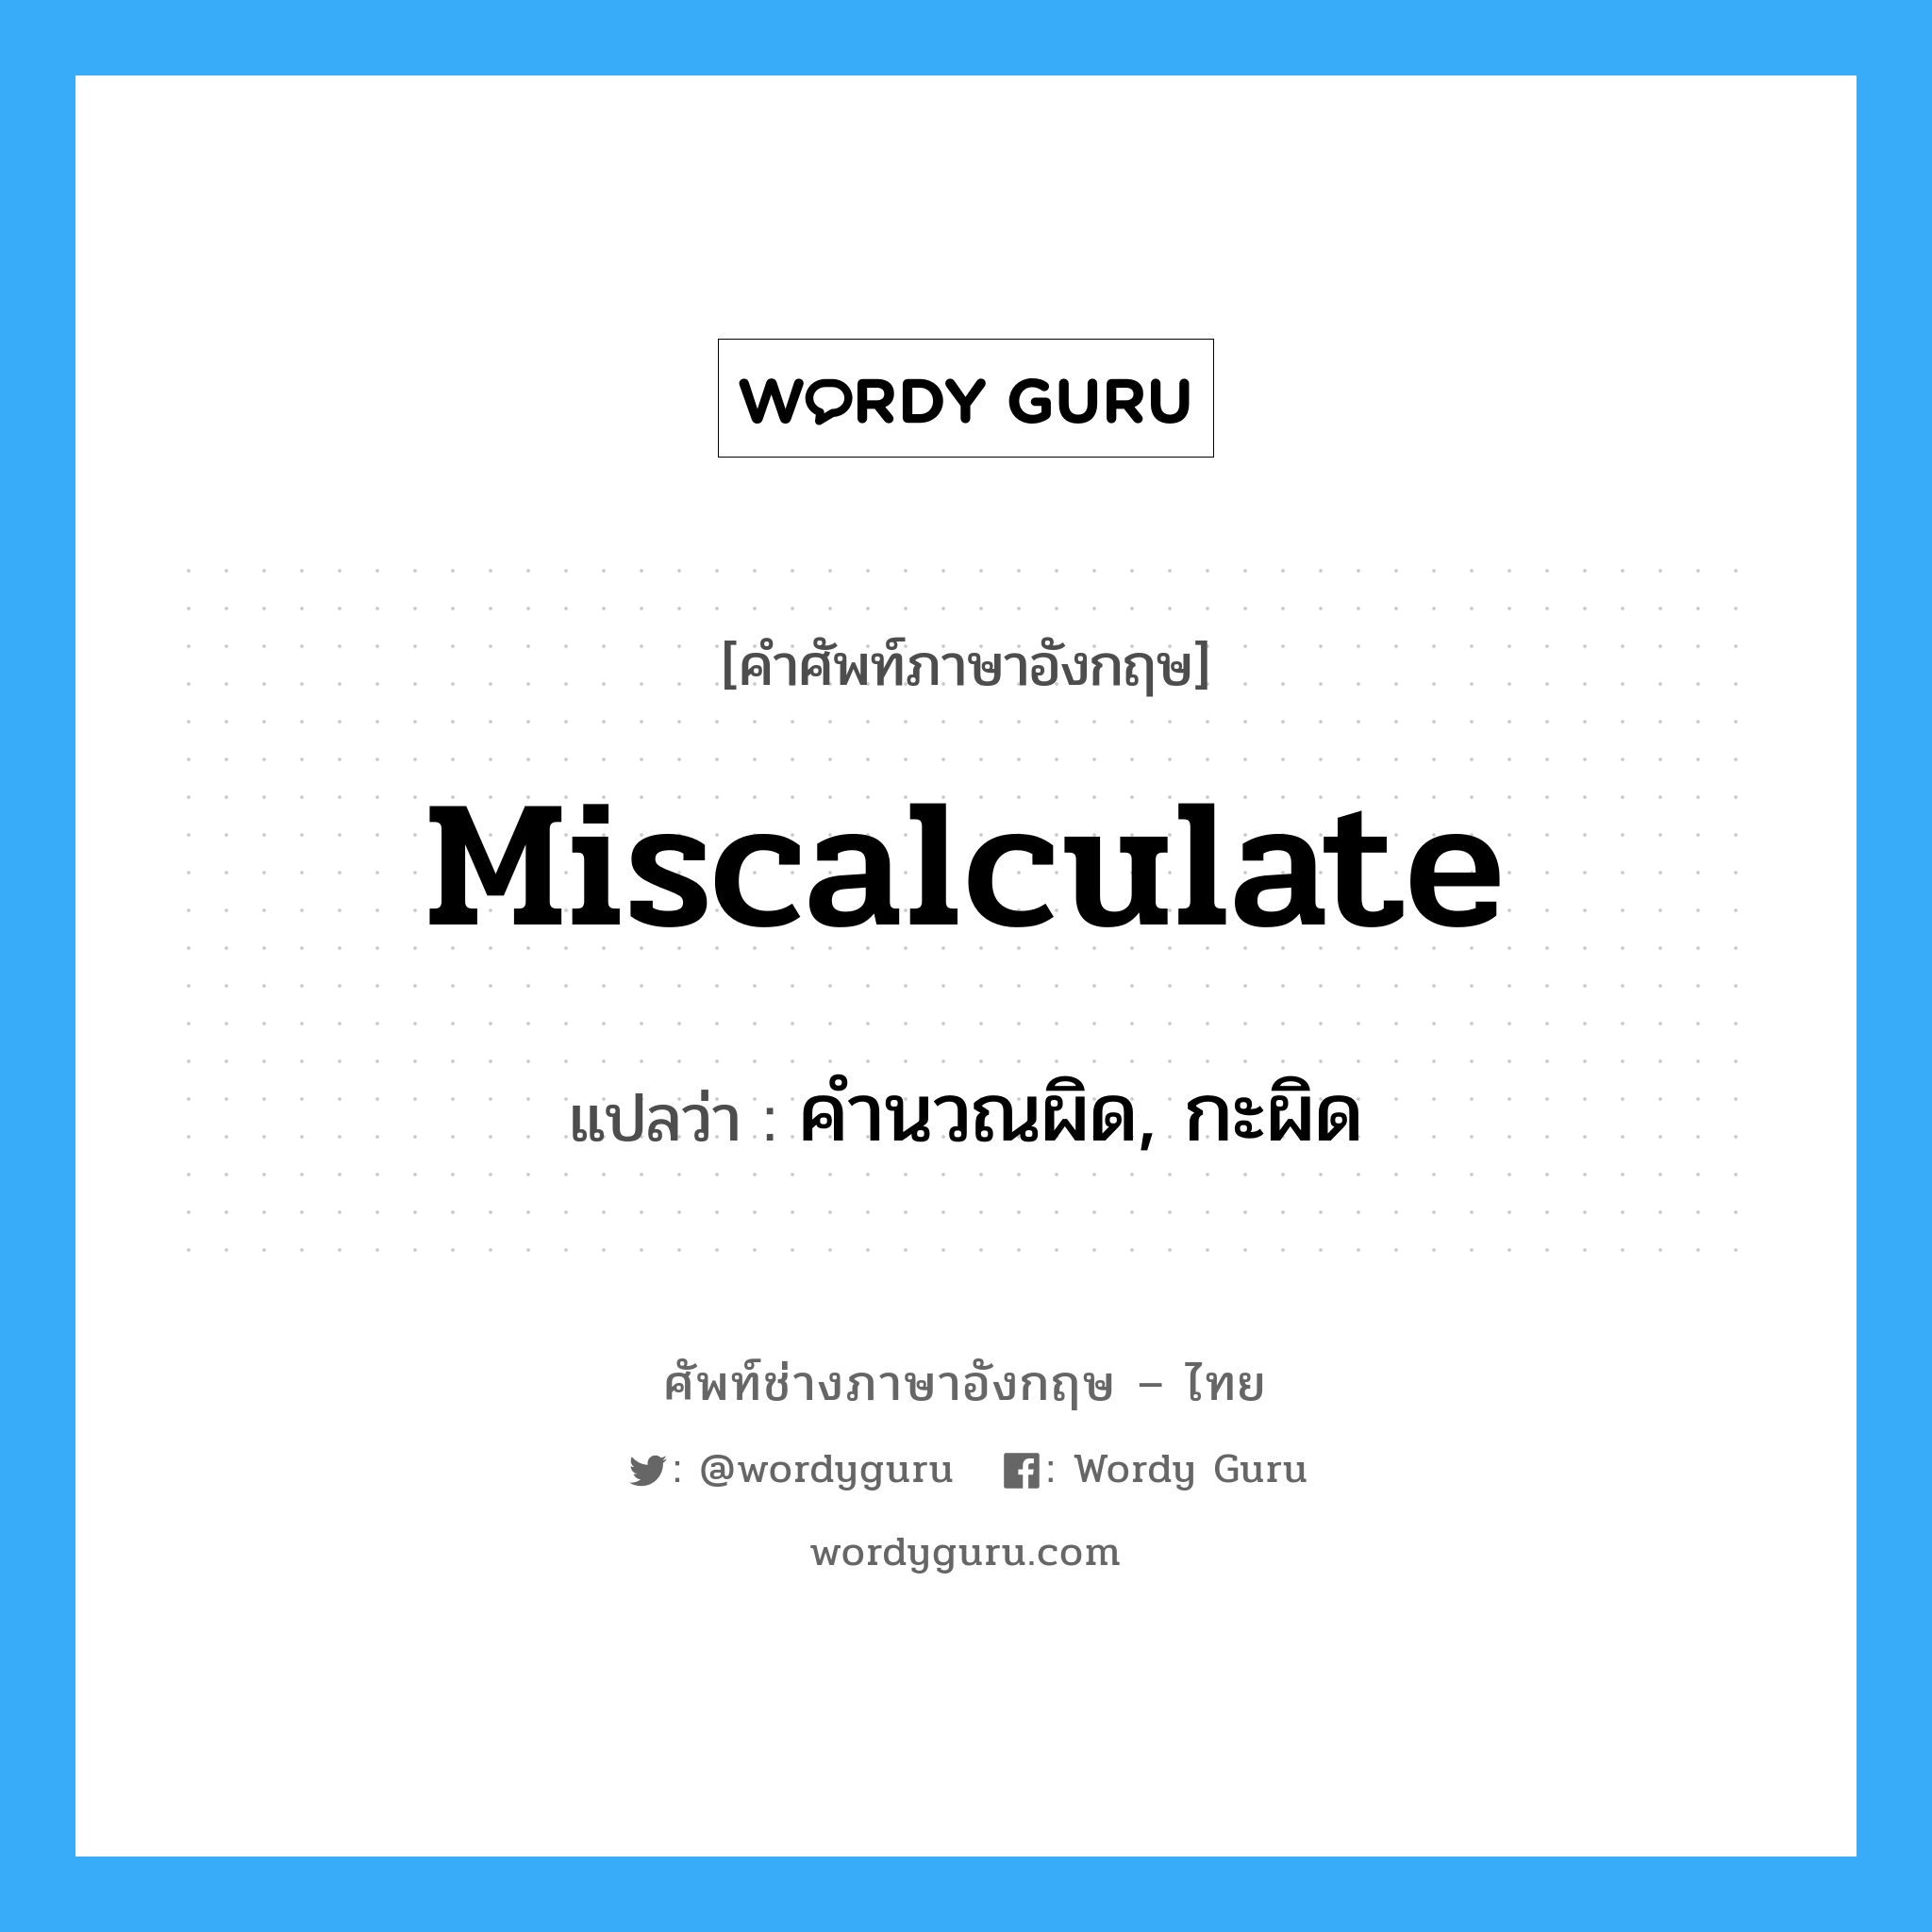 คำนวณผิด, กะผิด ภาษาอังกฤษ?, คำศัพท์ช่างภาษาอังกฤษ - ไทย คำนวณผิด, กะผิด คำศัพท์ภาษาอังกฤษ คำนวณผิด, กะผิด แปลว่า miscalculate